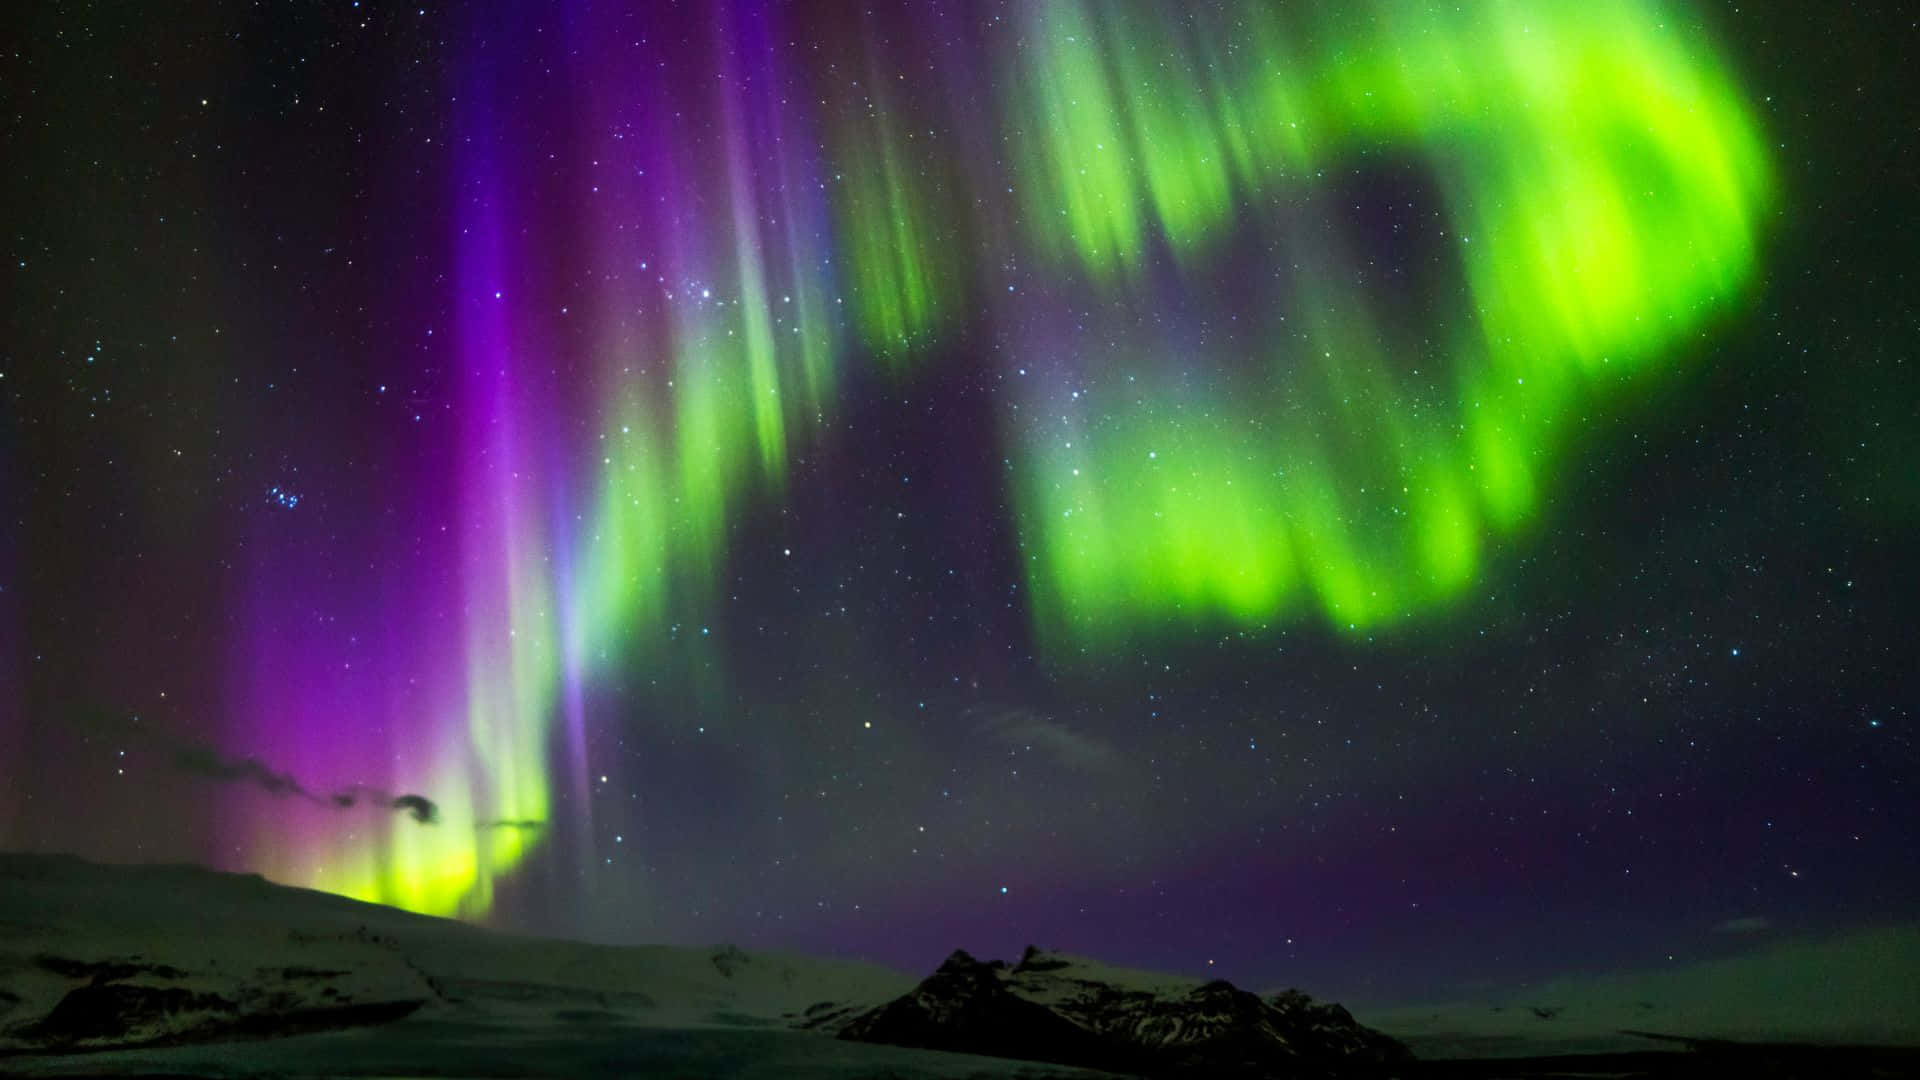 Impresionantevista De La Aurora Boreal En Un Cielo Estrellado De Noche. Fondo de pantalla